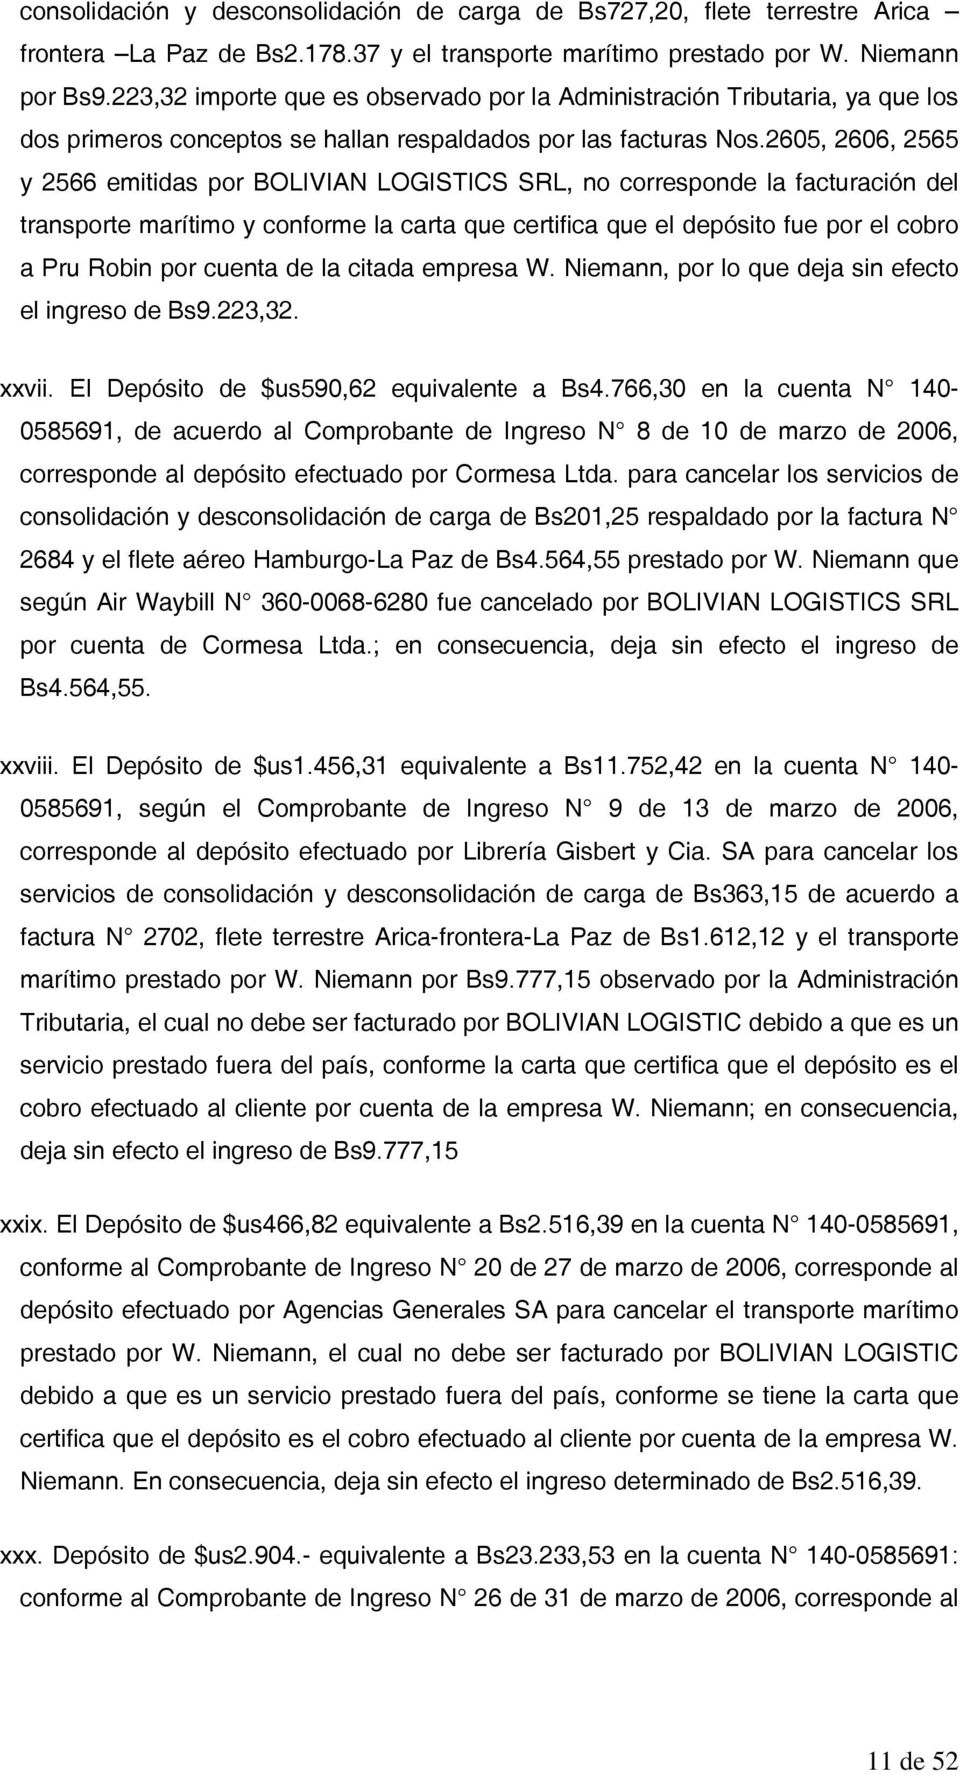 2605, 2606, 2565 y 2566 emitidas por BOLIVIAN LOGISTICS SRL, no corresponde la facturación del transporte marítimo y conforme la carta que certifica que el depósito fue por el cobro a Pru Robin por